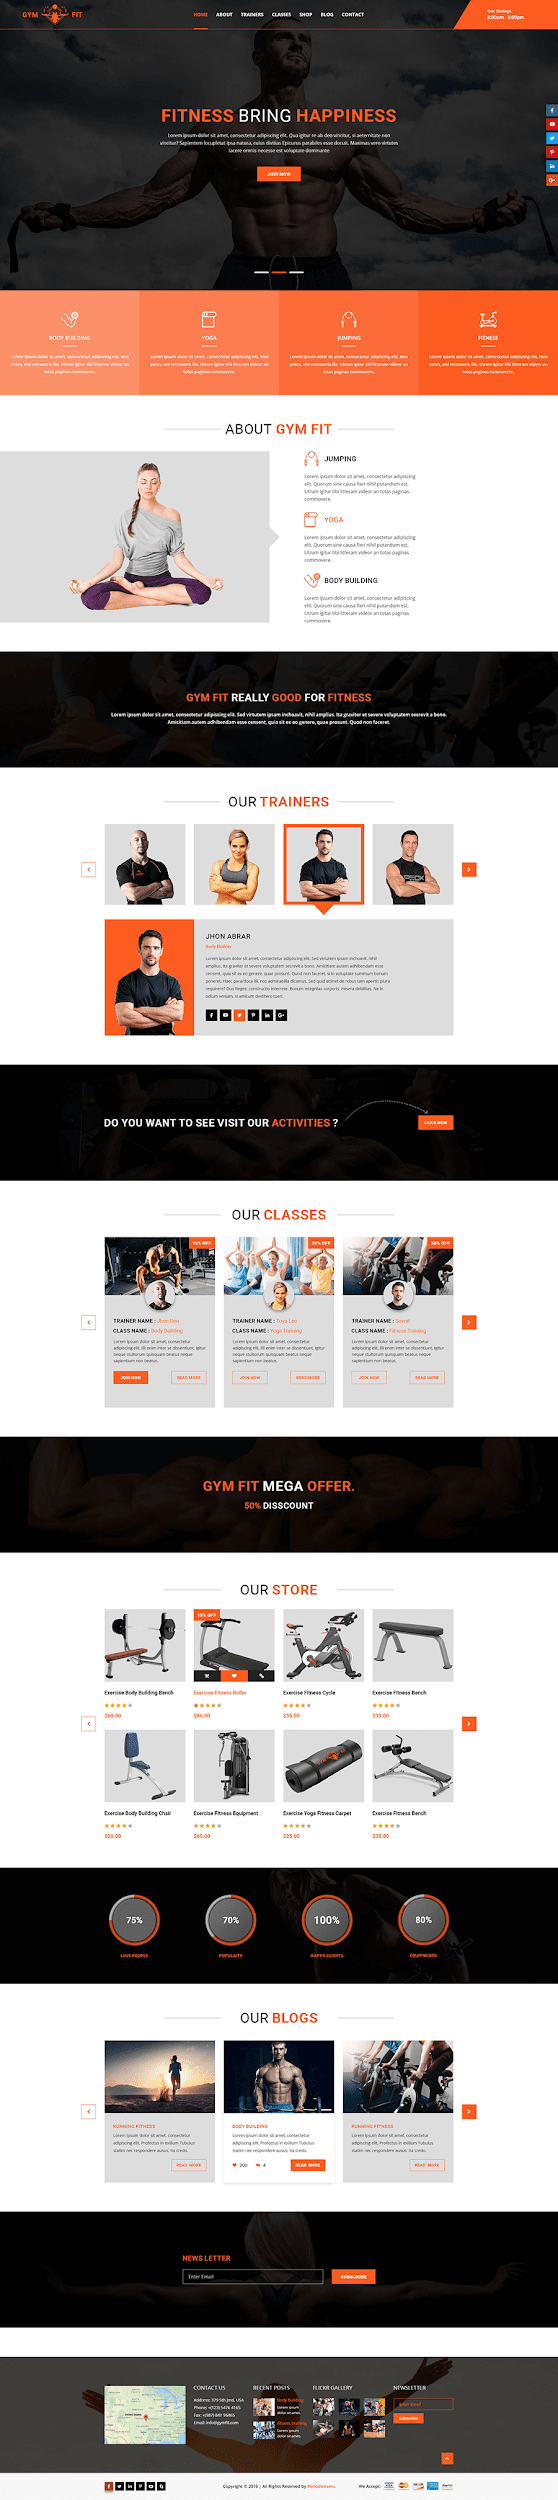 Thiết kế website phòng Gym, yoga | Độc quyền chuẩn SEO | Mona Media